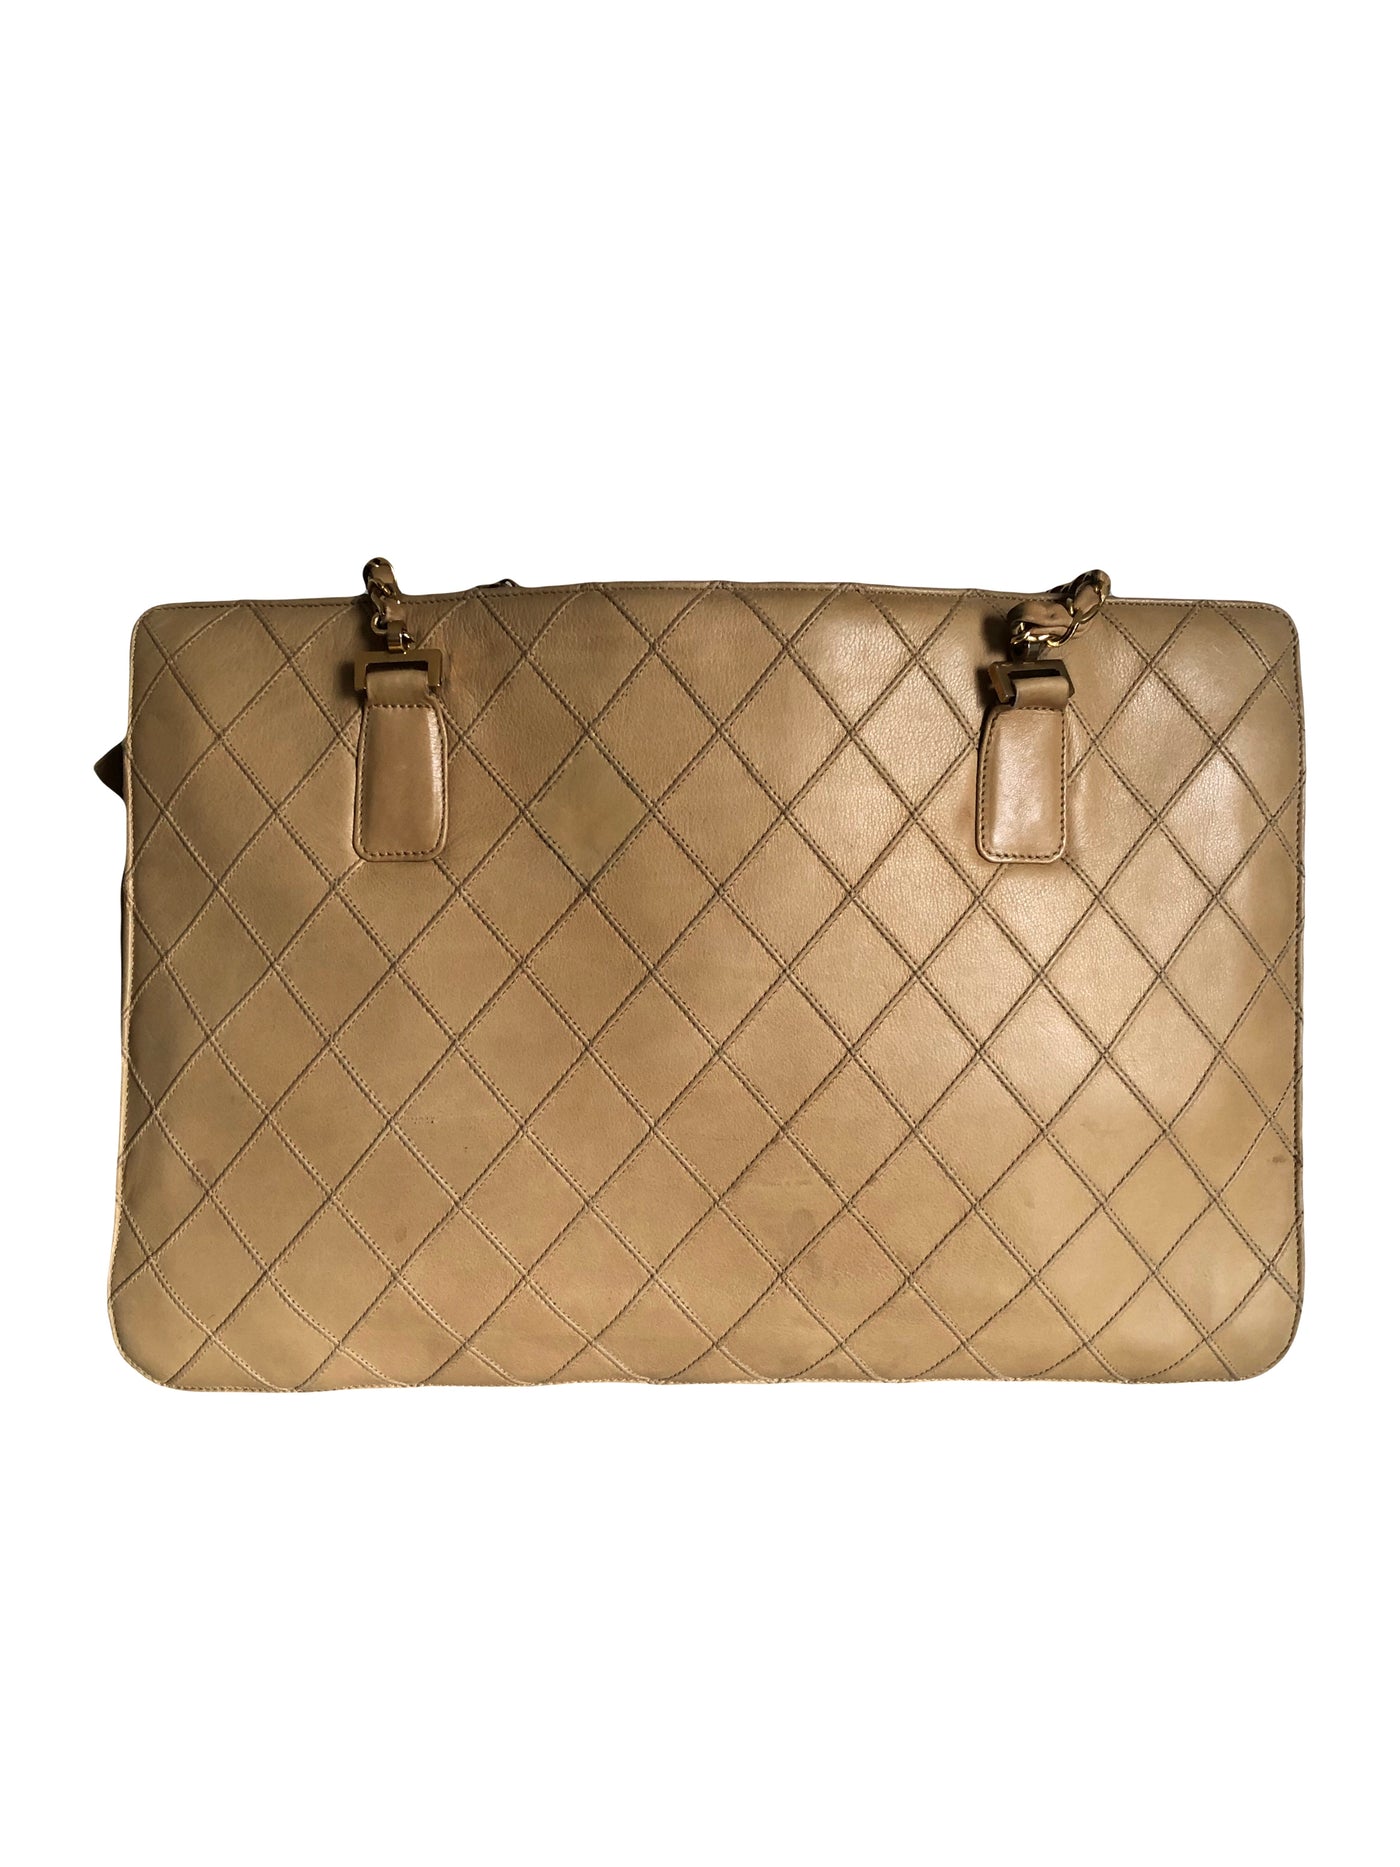 CHANEL vintage 1980's beige shopper bag with gold hardware – U & Moi